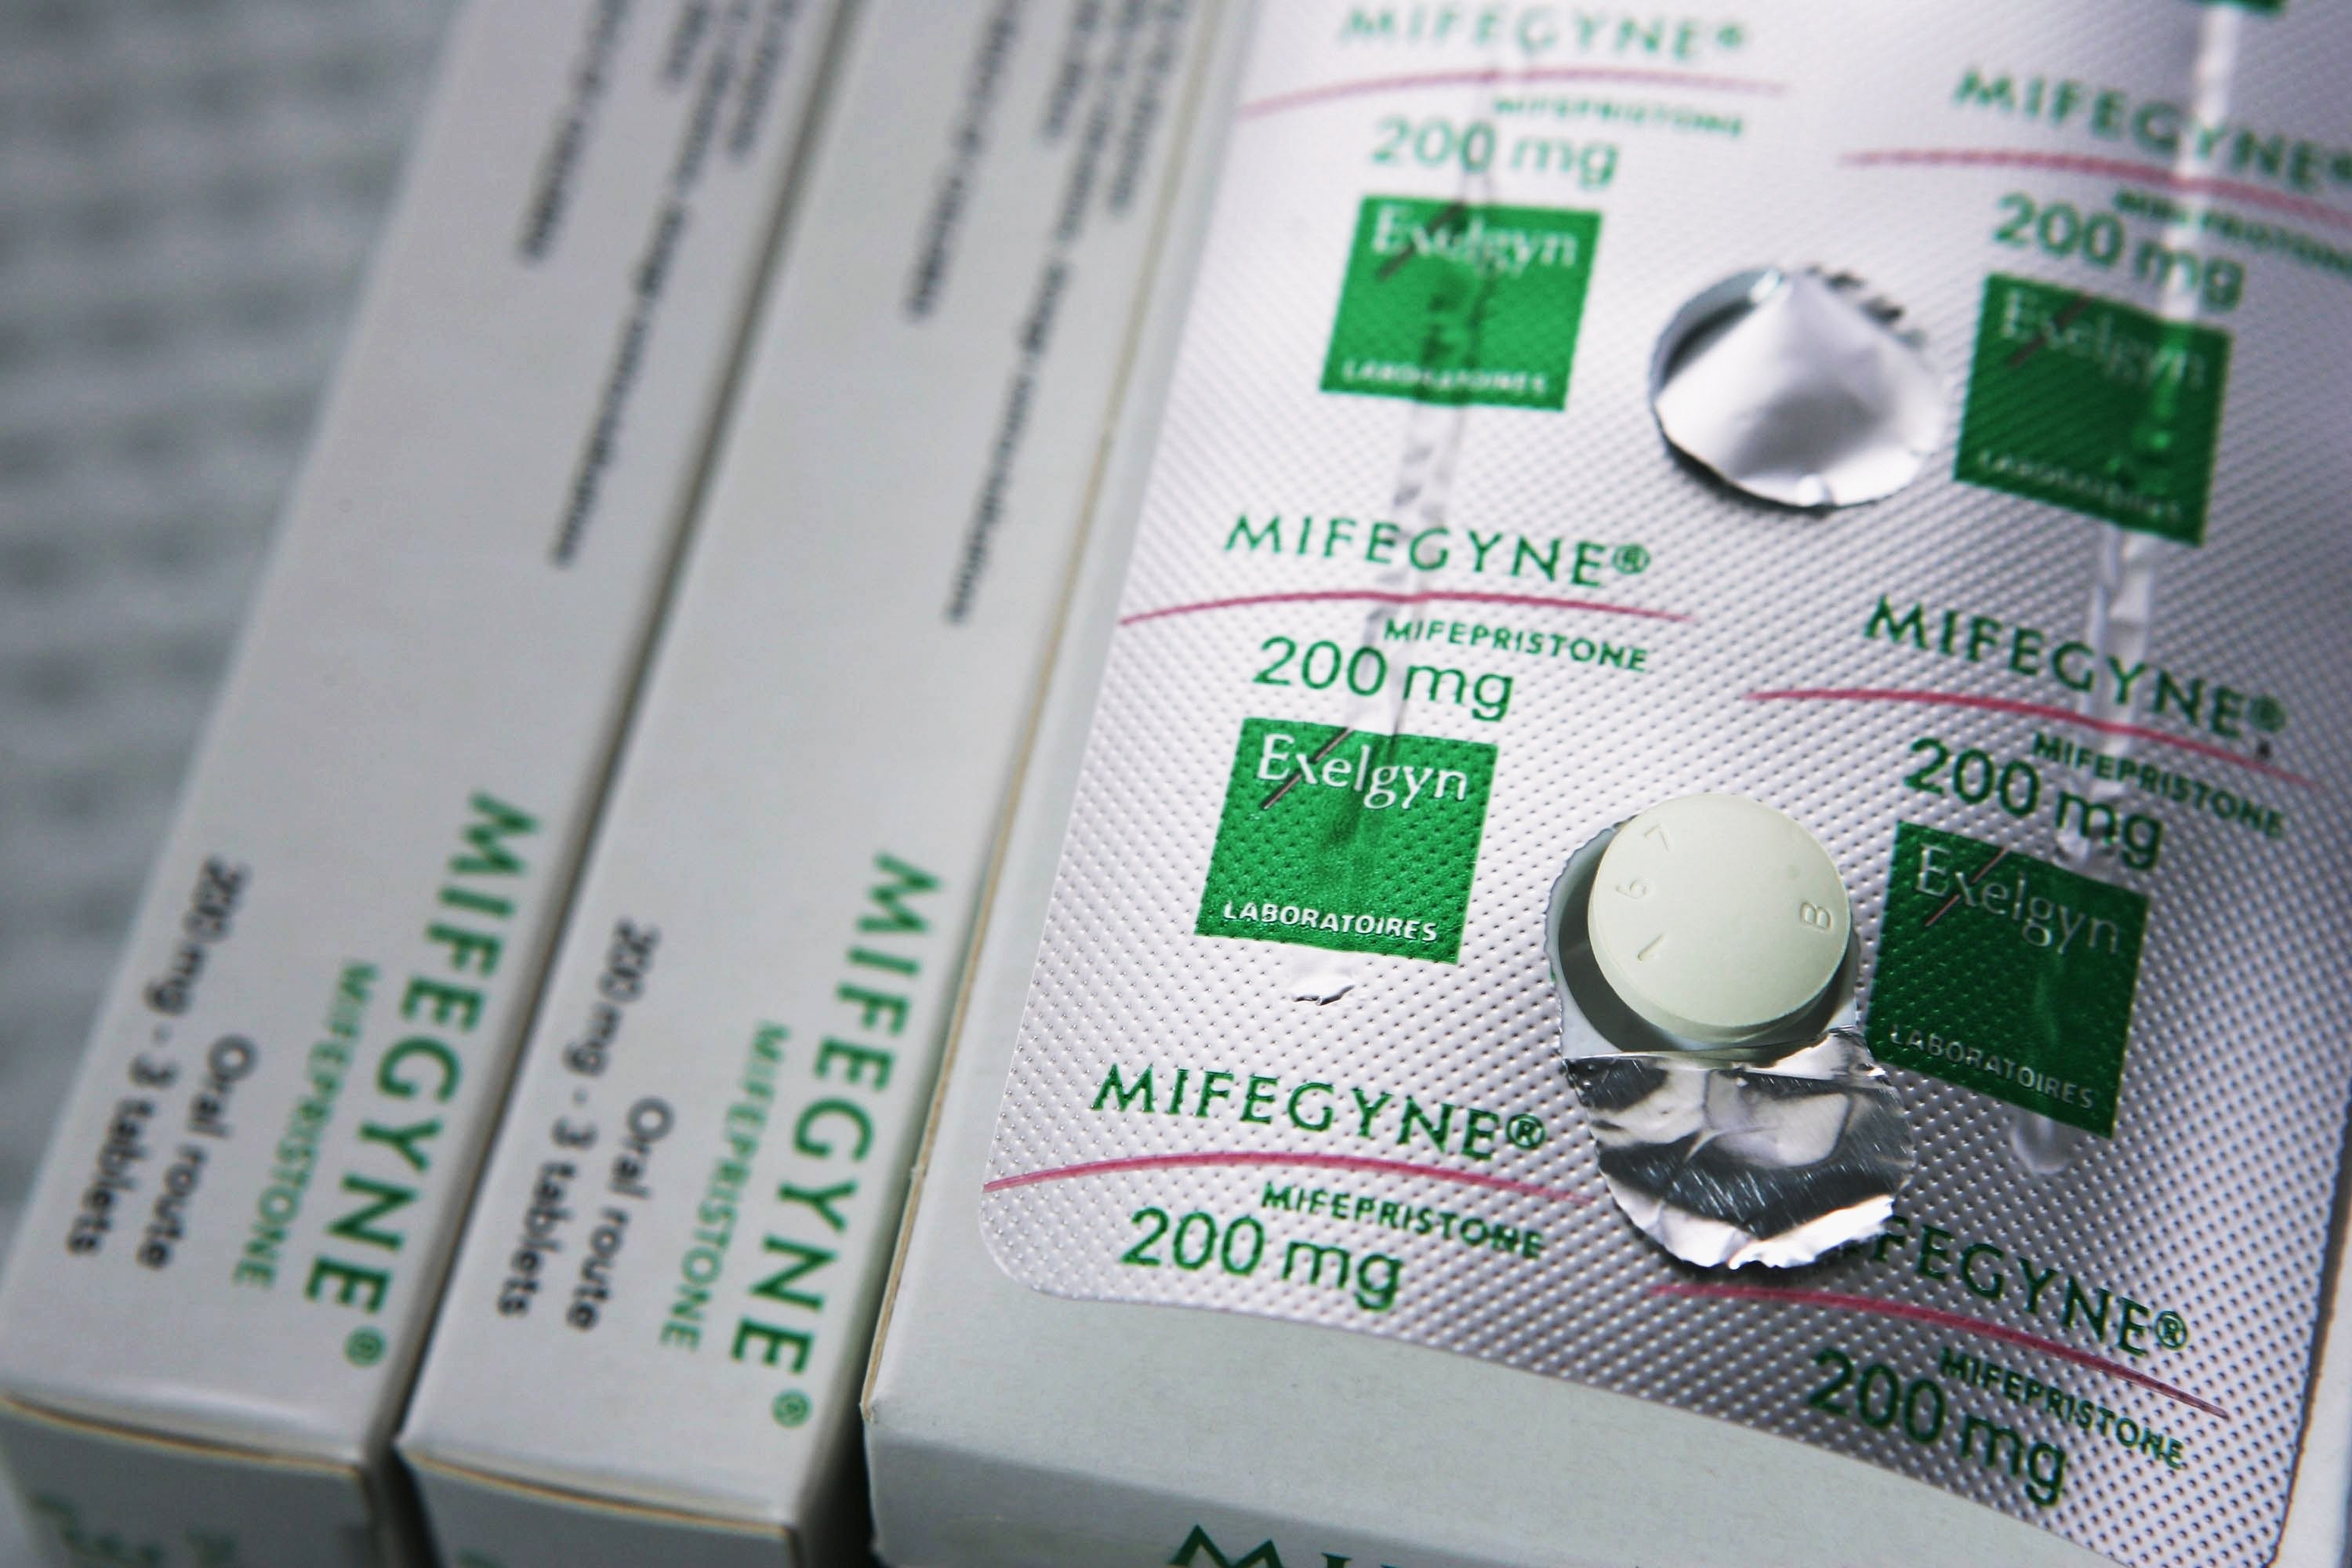 Препараты для медикаментозного прерывания. "Mifepristone" (мифепристон). Мифегин медикаментозное прерывание. Мифегин 200 мг. Таблетки от прерывания беременности Мифегин.